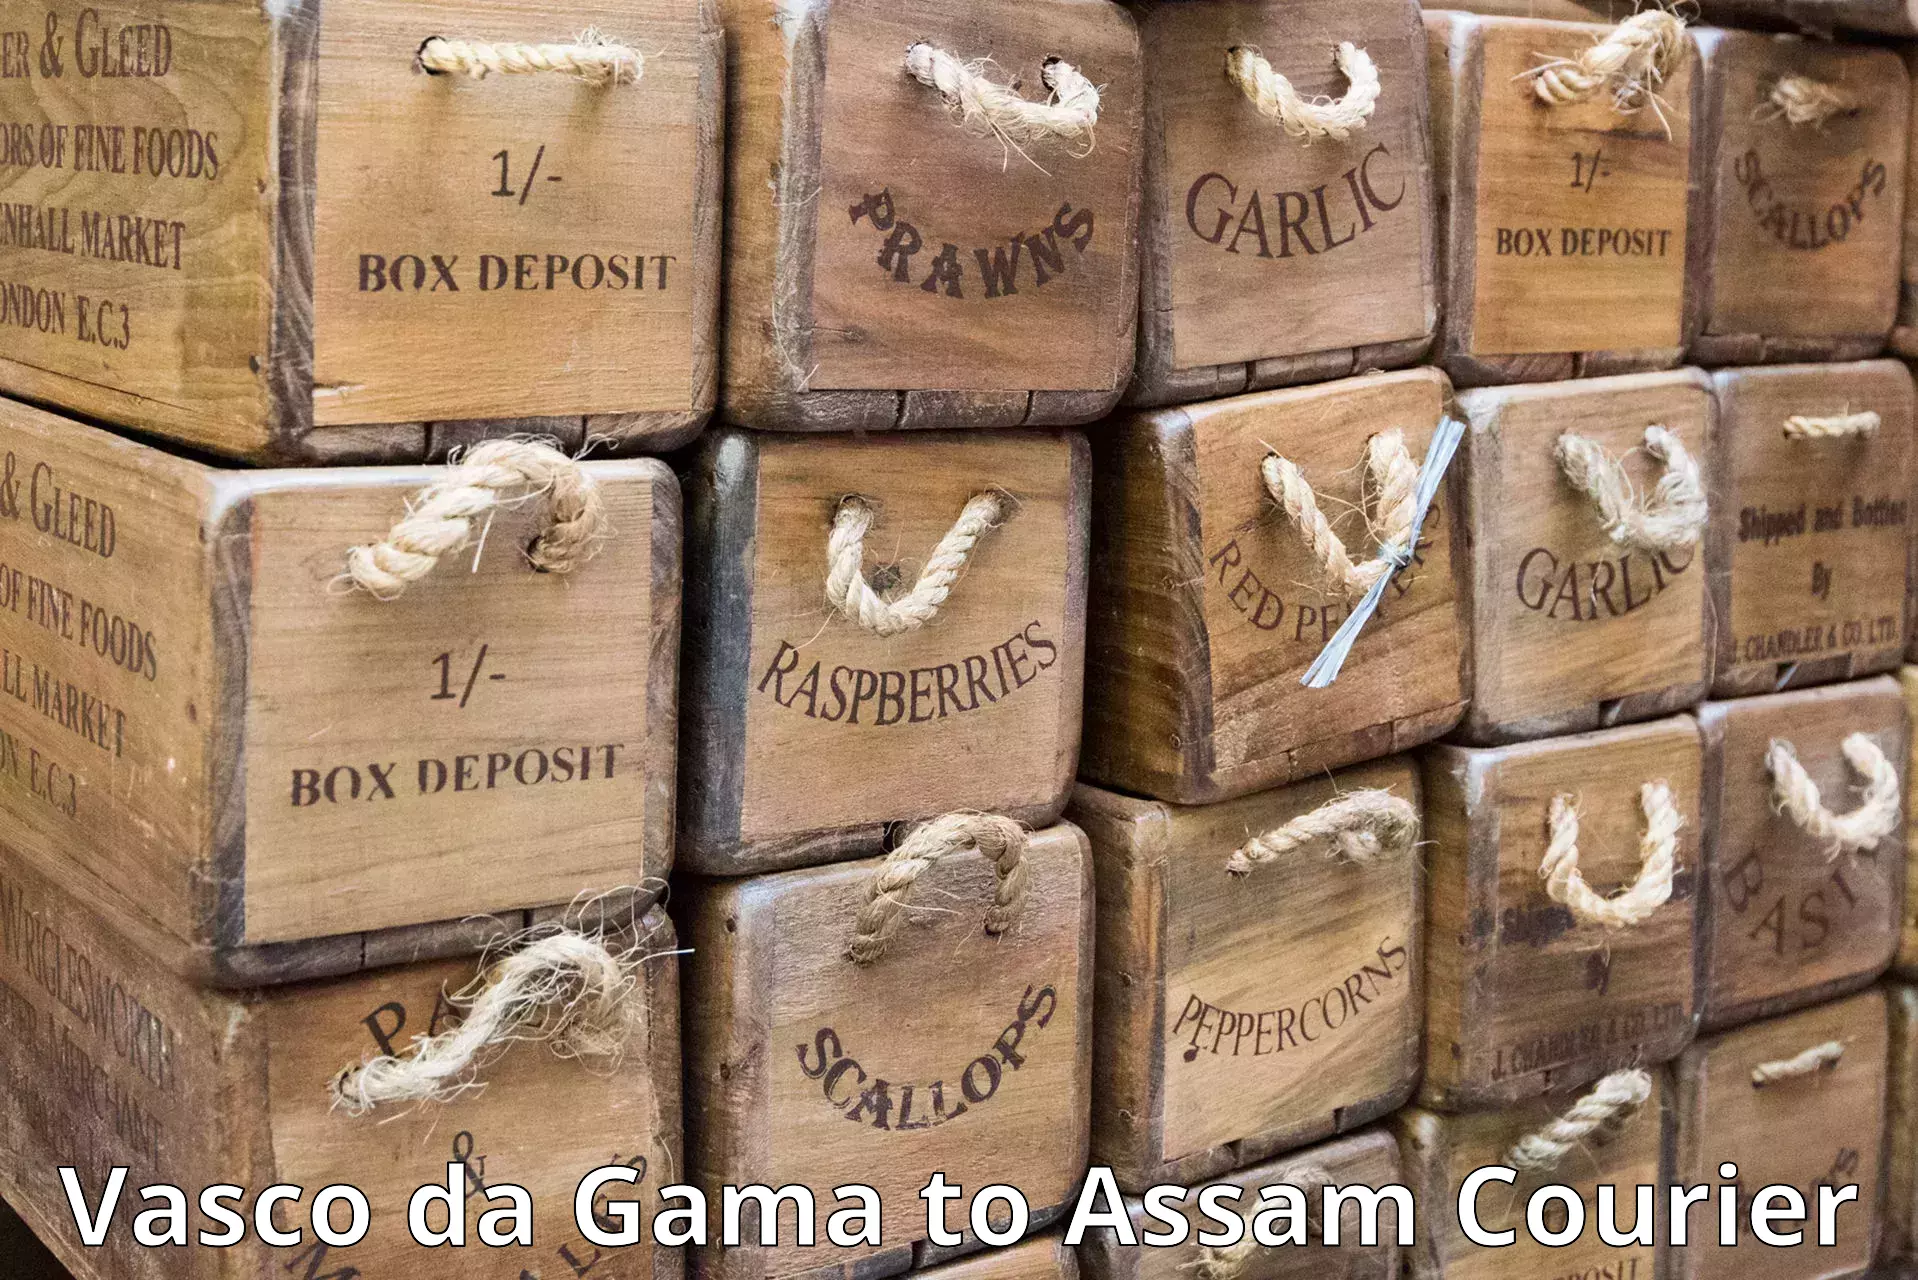 Express postal services Vasco da Gama to Thelamara